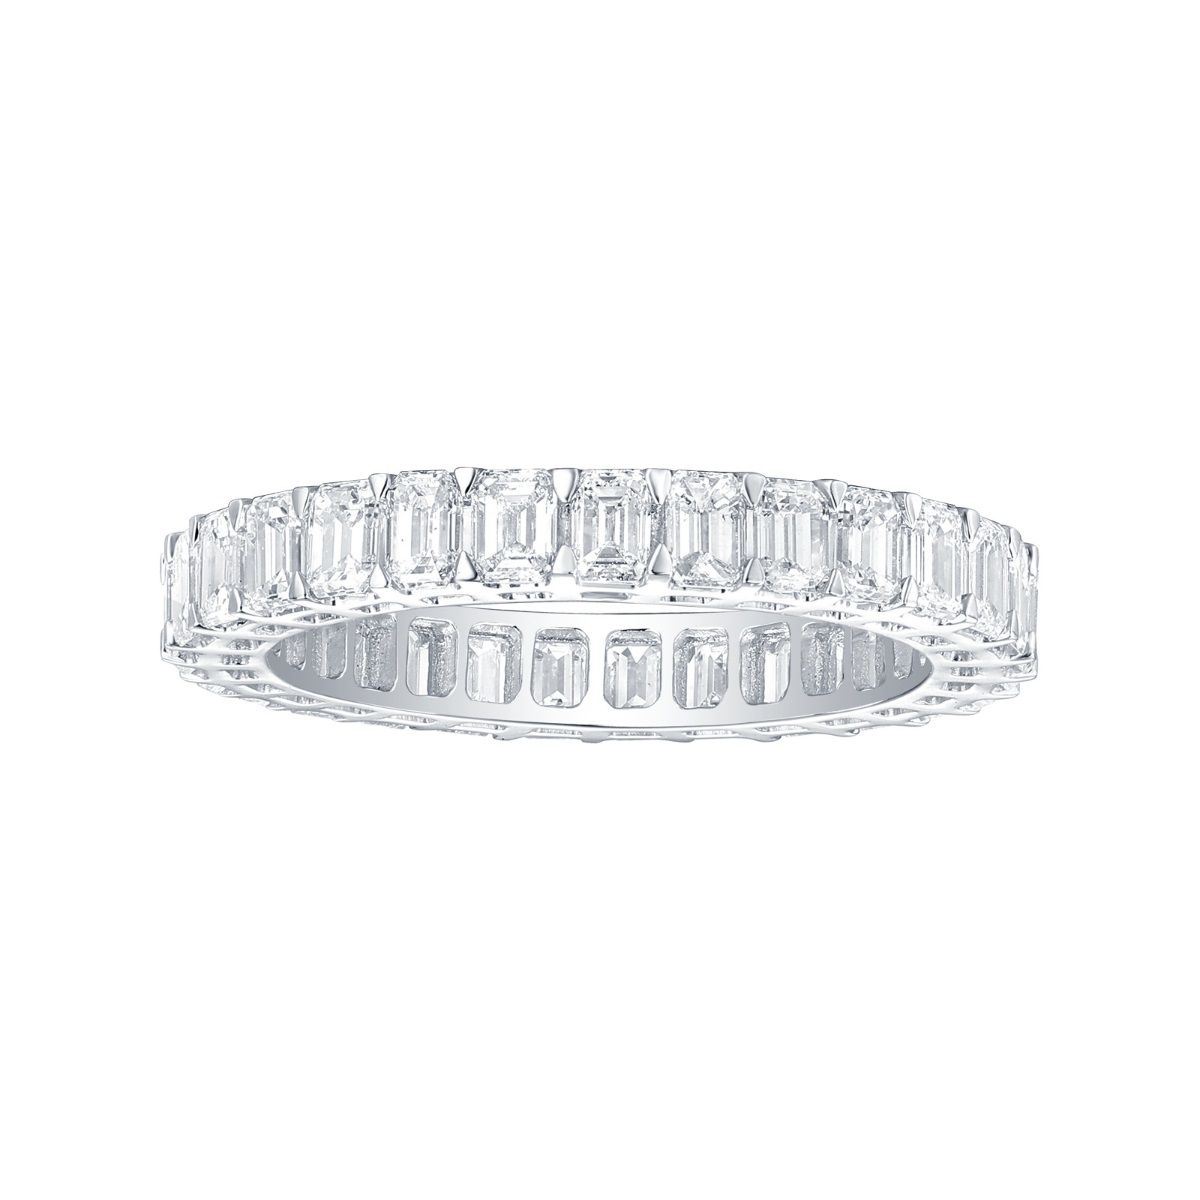 R36911WHT – 18K White Gold Diamond Ring, 2.5 TCW